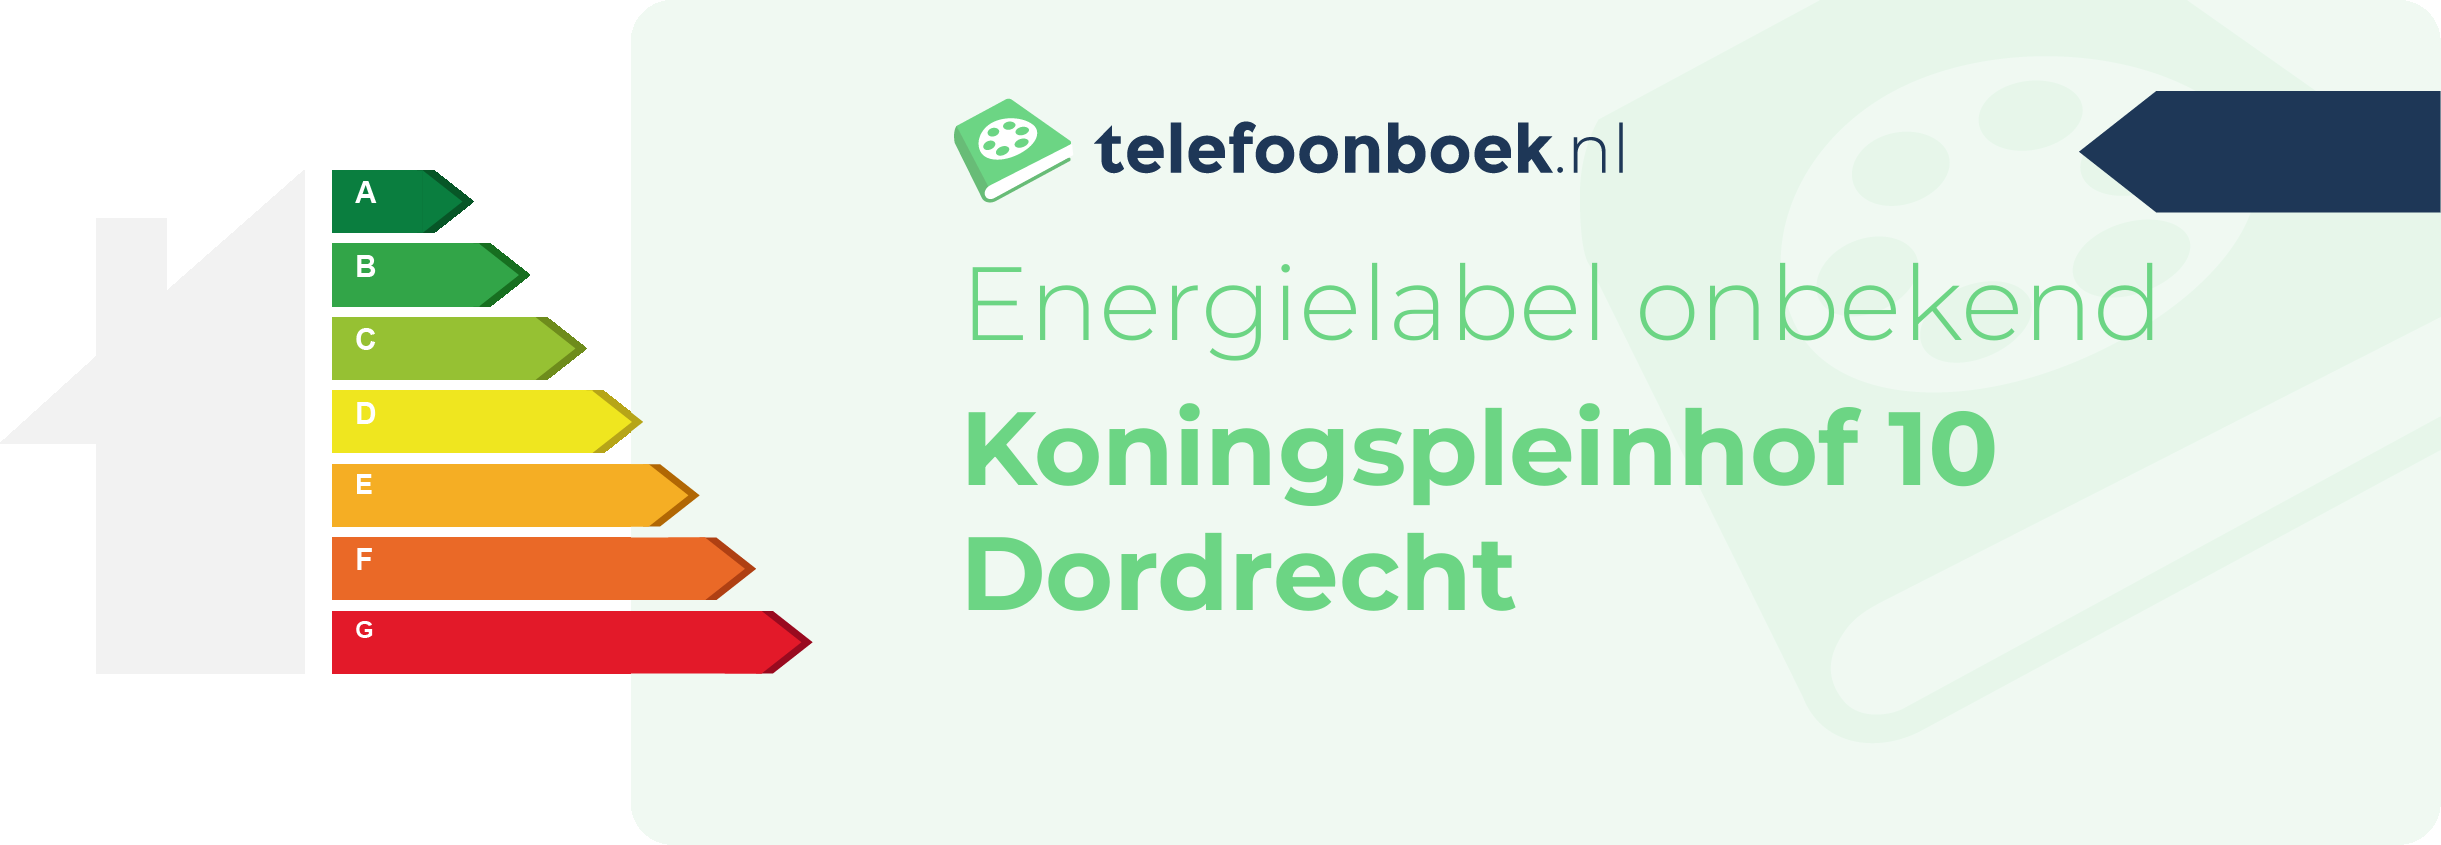 Energielabel Koningspleinhof 10 Dordrecht